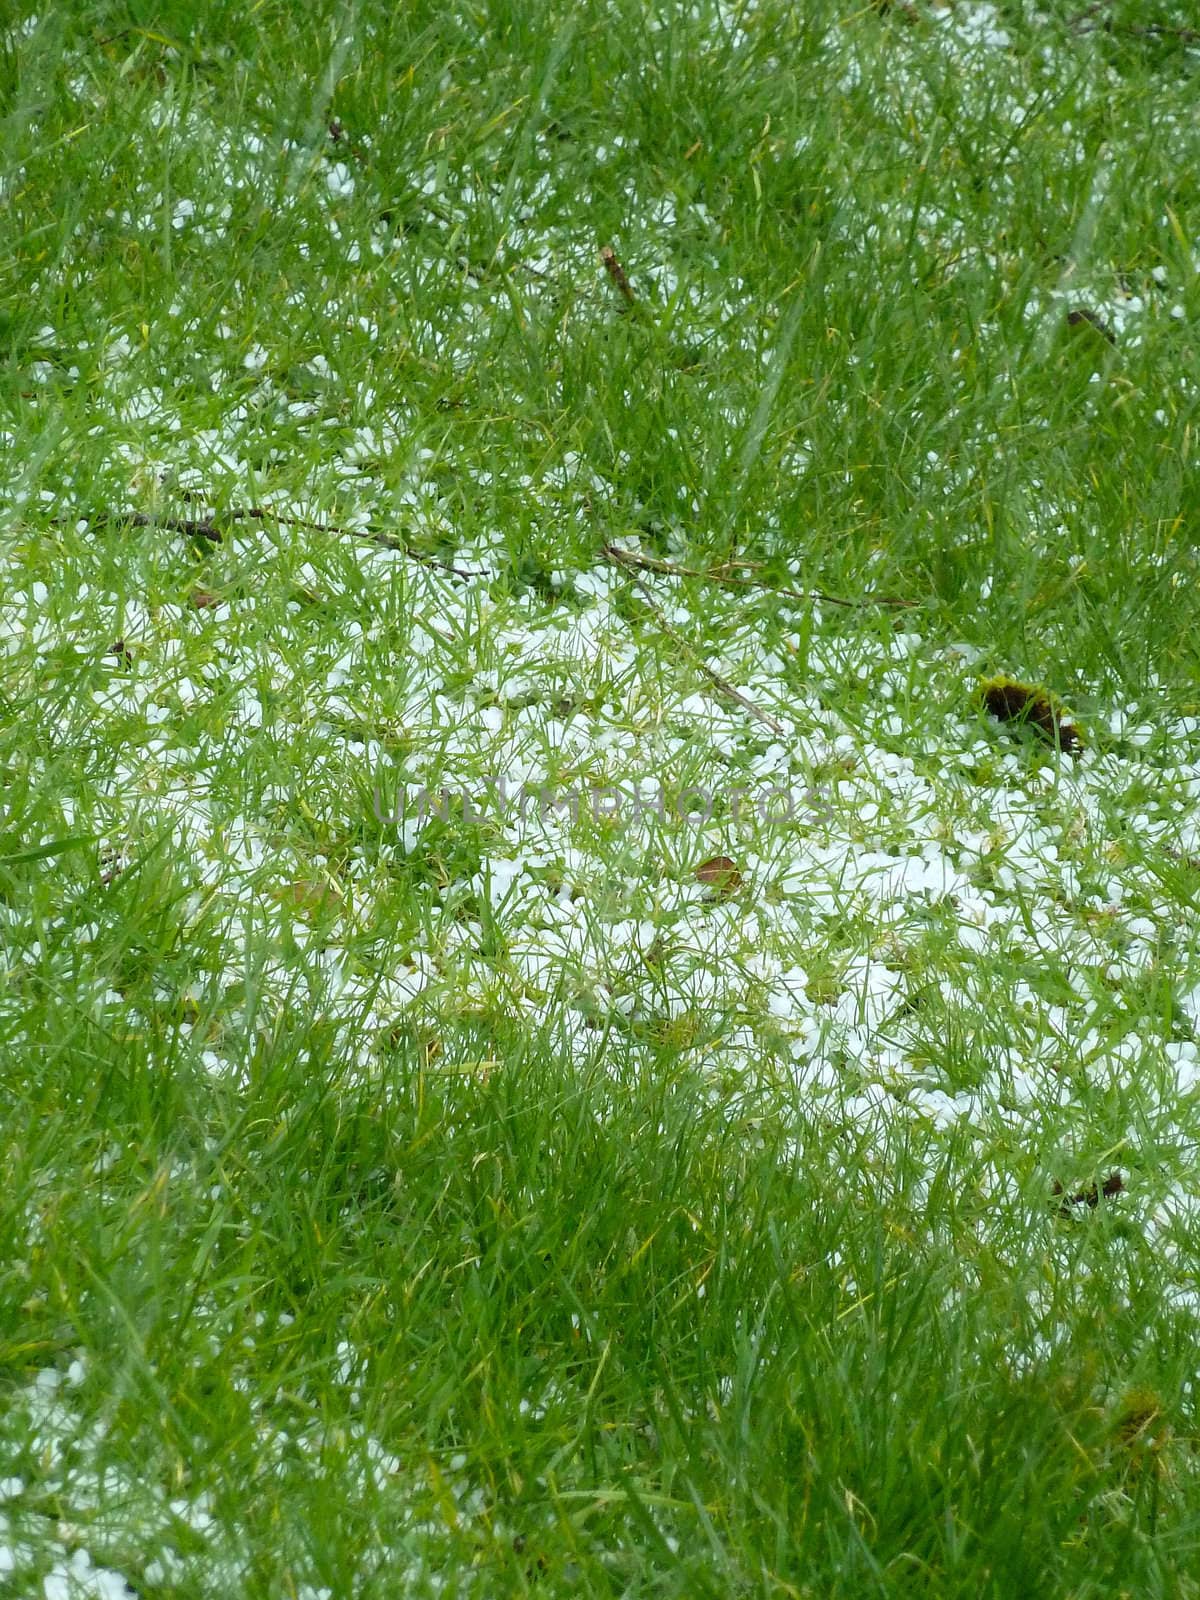 hailstones on grass after a sudden shower